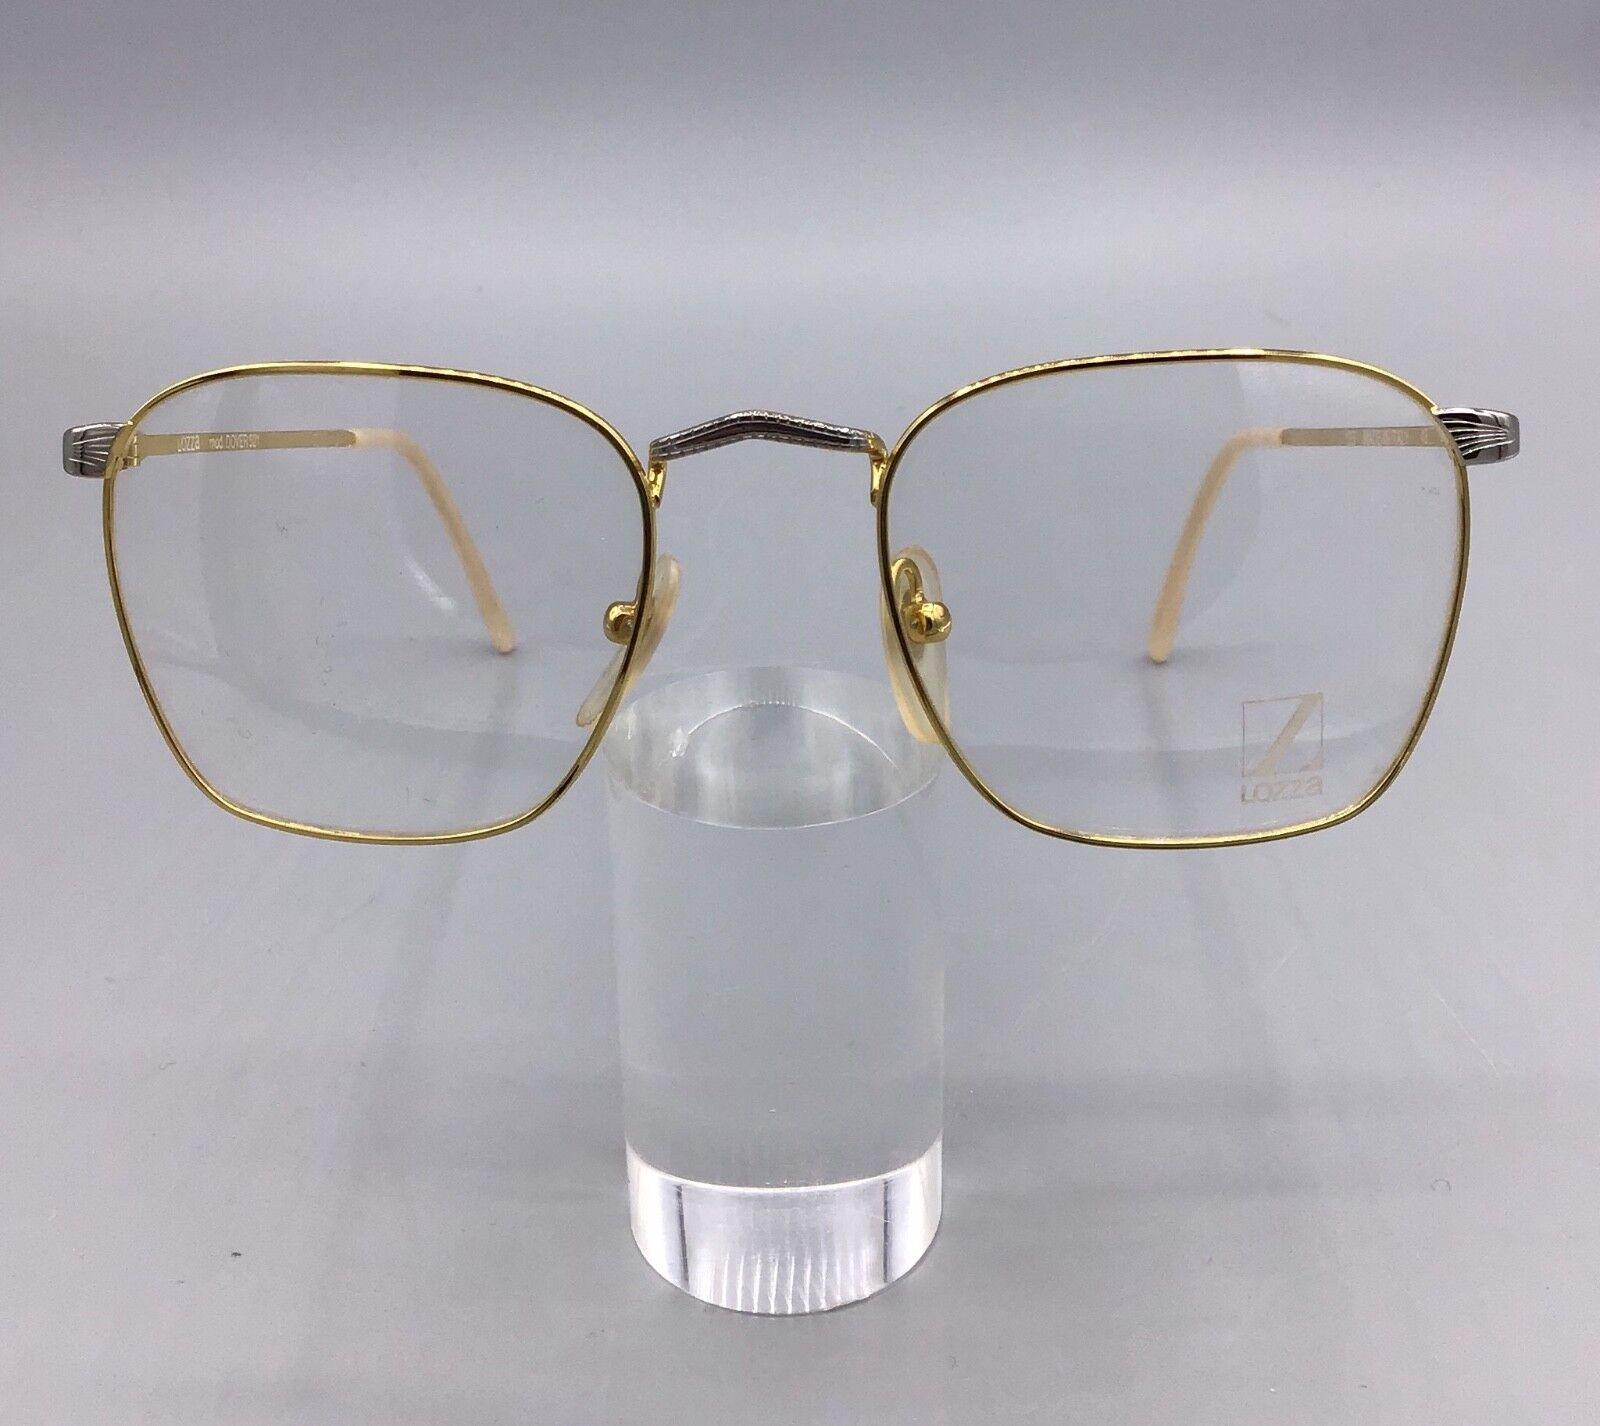 Lozza occhiale vintage eyewear brillen lunettes gafas glasses DOVER 521